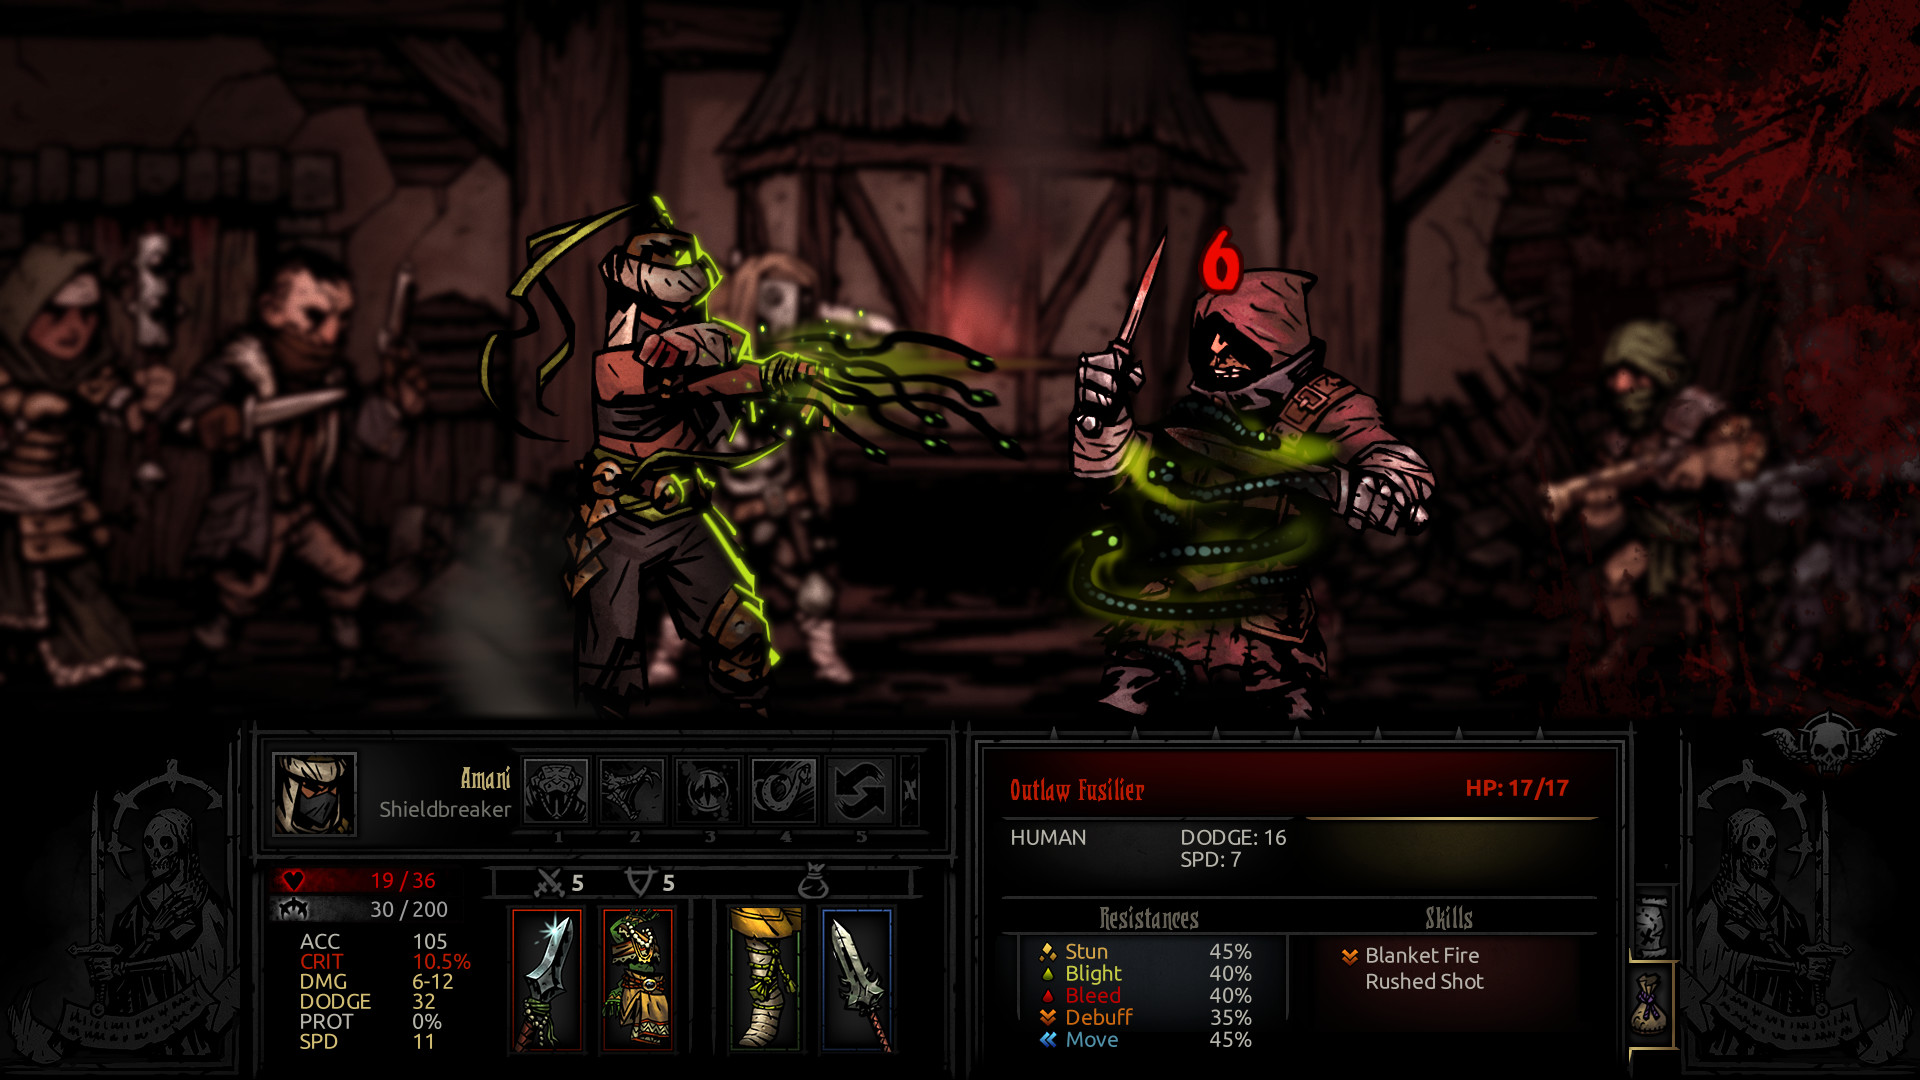 Darkest Dungeon: The Shieldbreaker screenshot